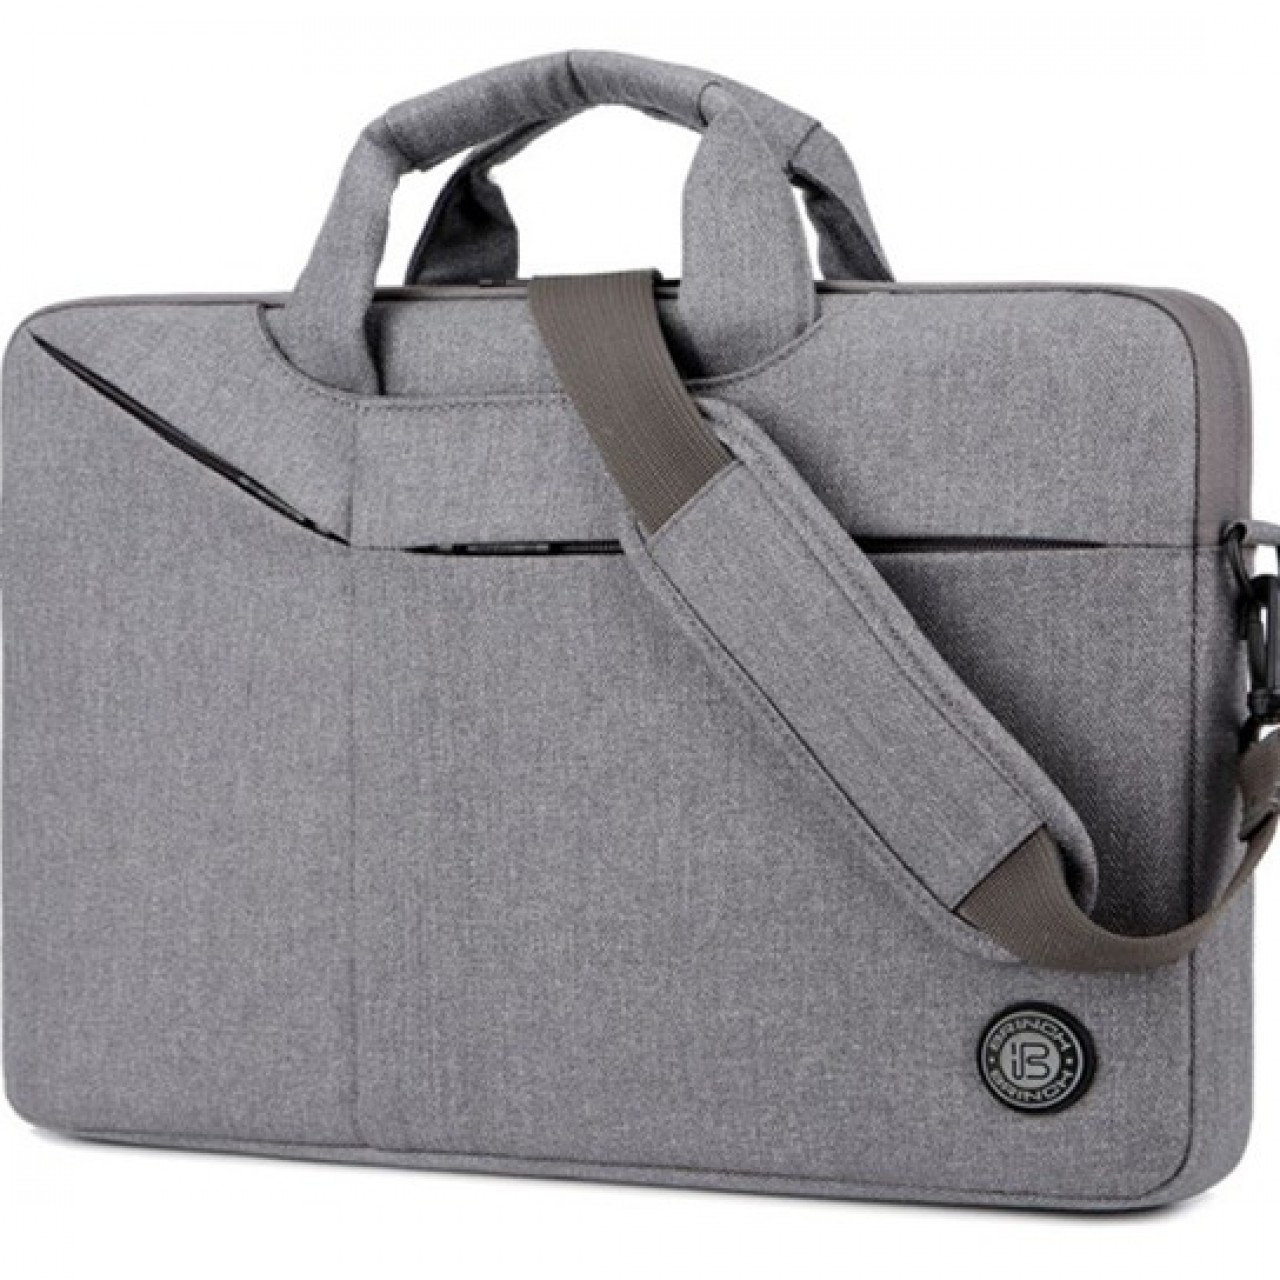 Brinch BW-235 Laptop Bag 14.6 Inch - Grey